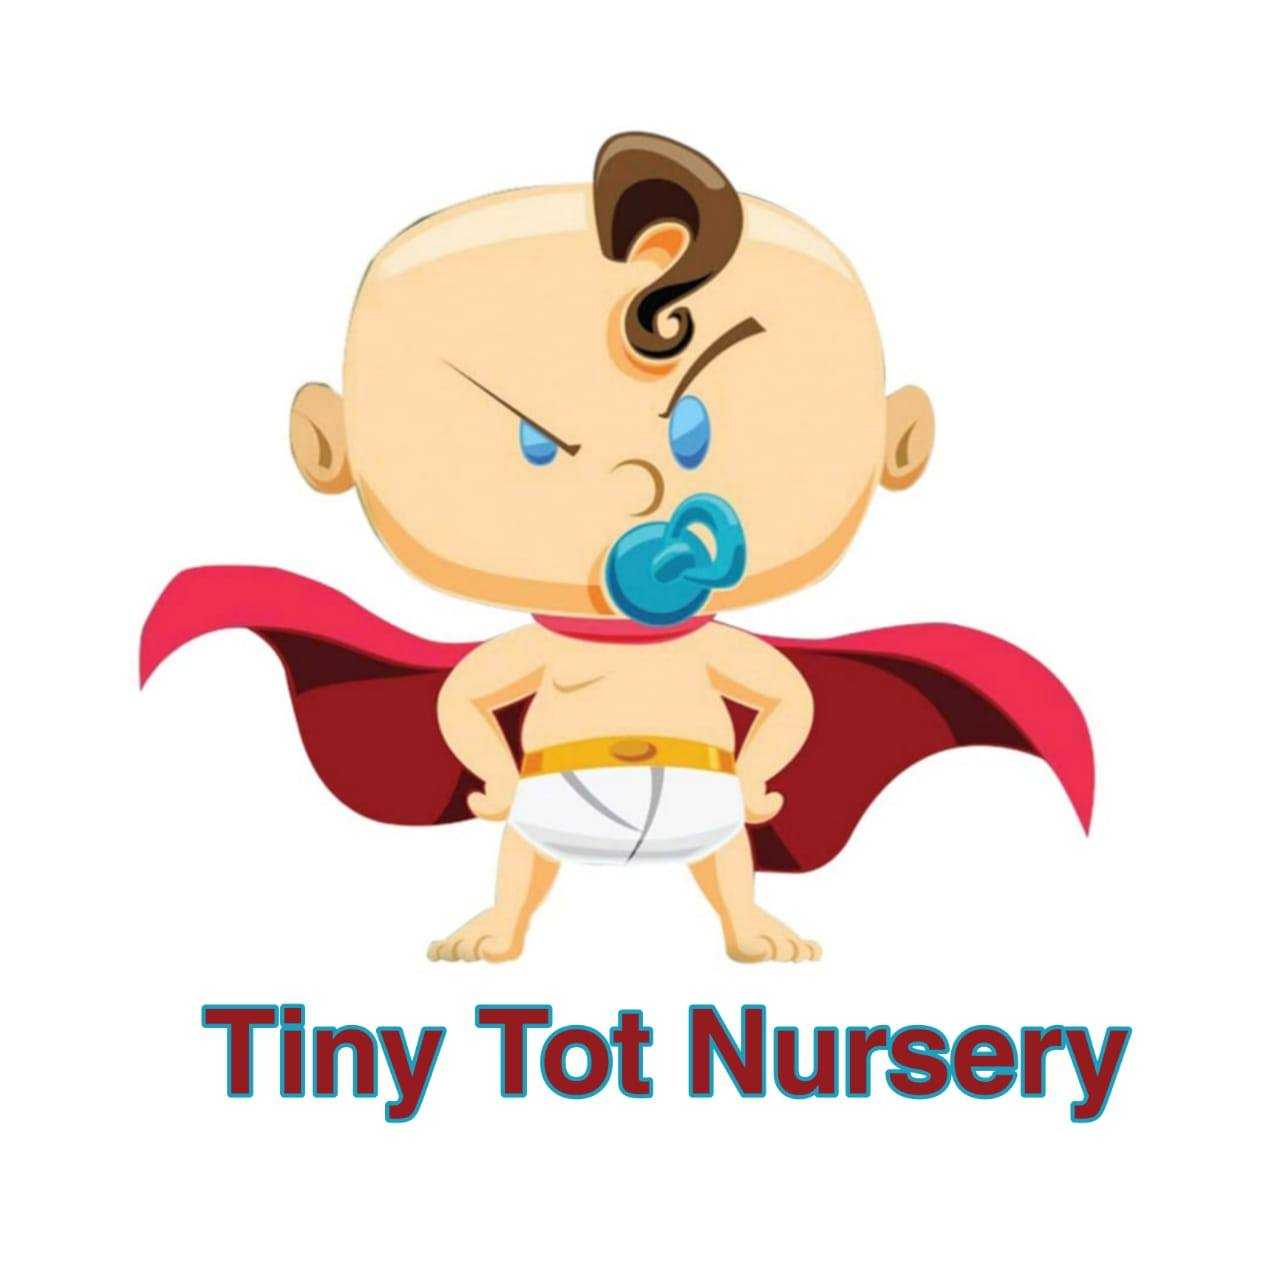 TinyTot Nursery